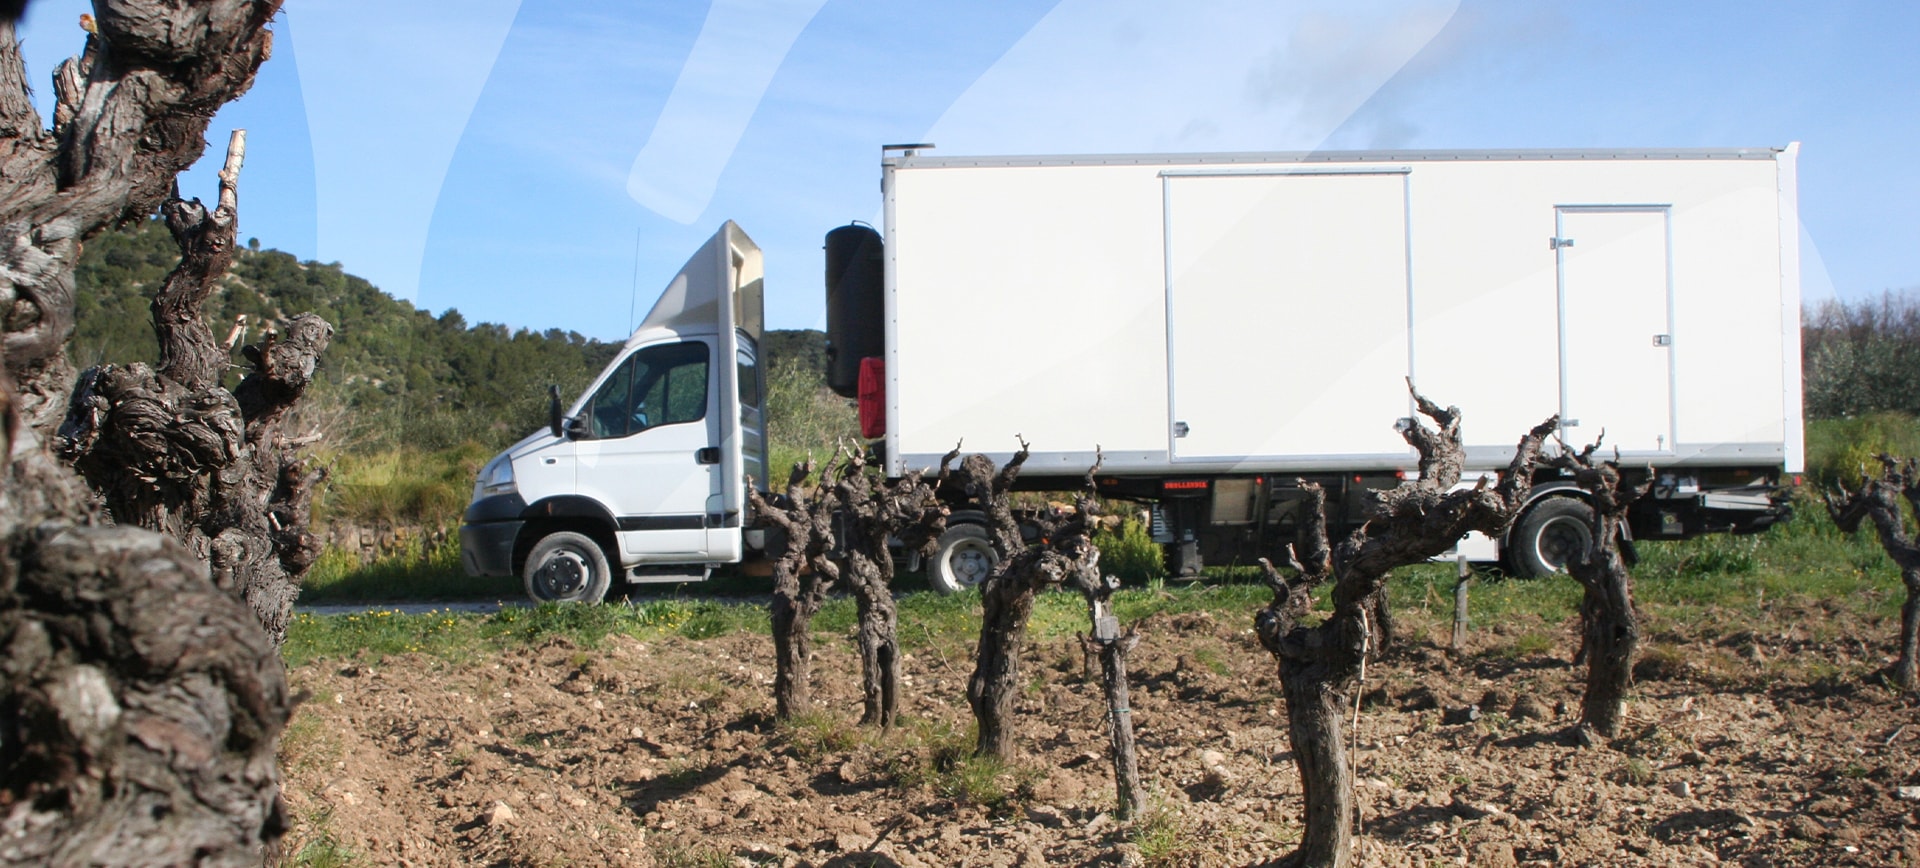 Embouteilleur de vins dans le Gard, l’Hérault... en Occitanie